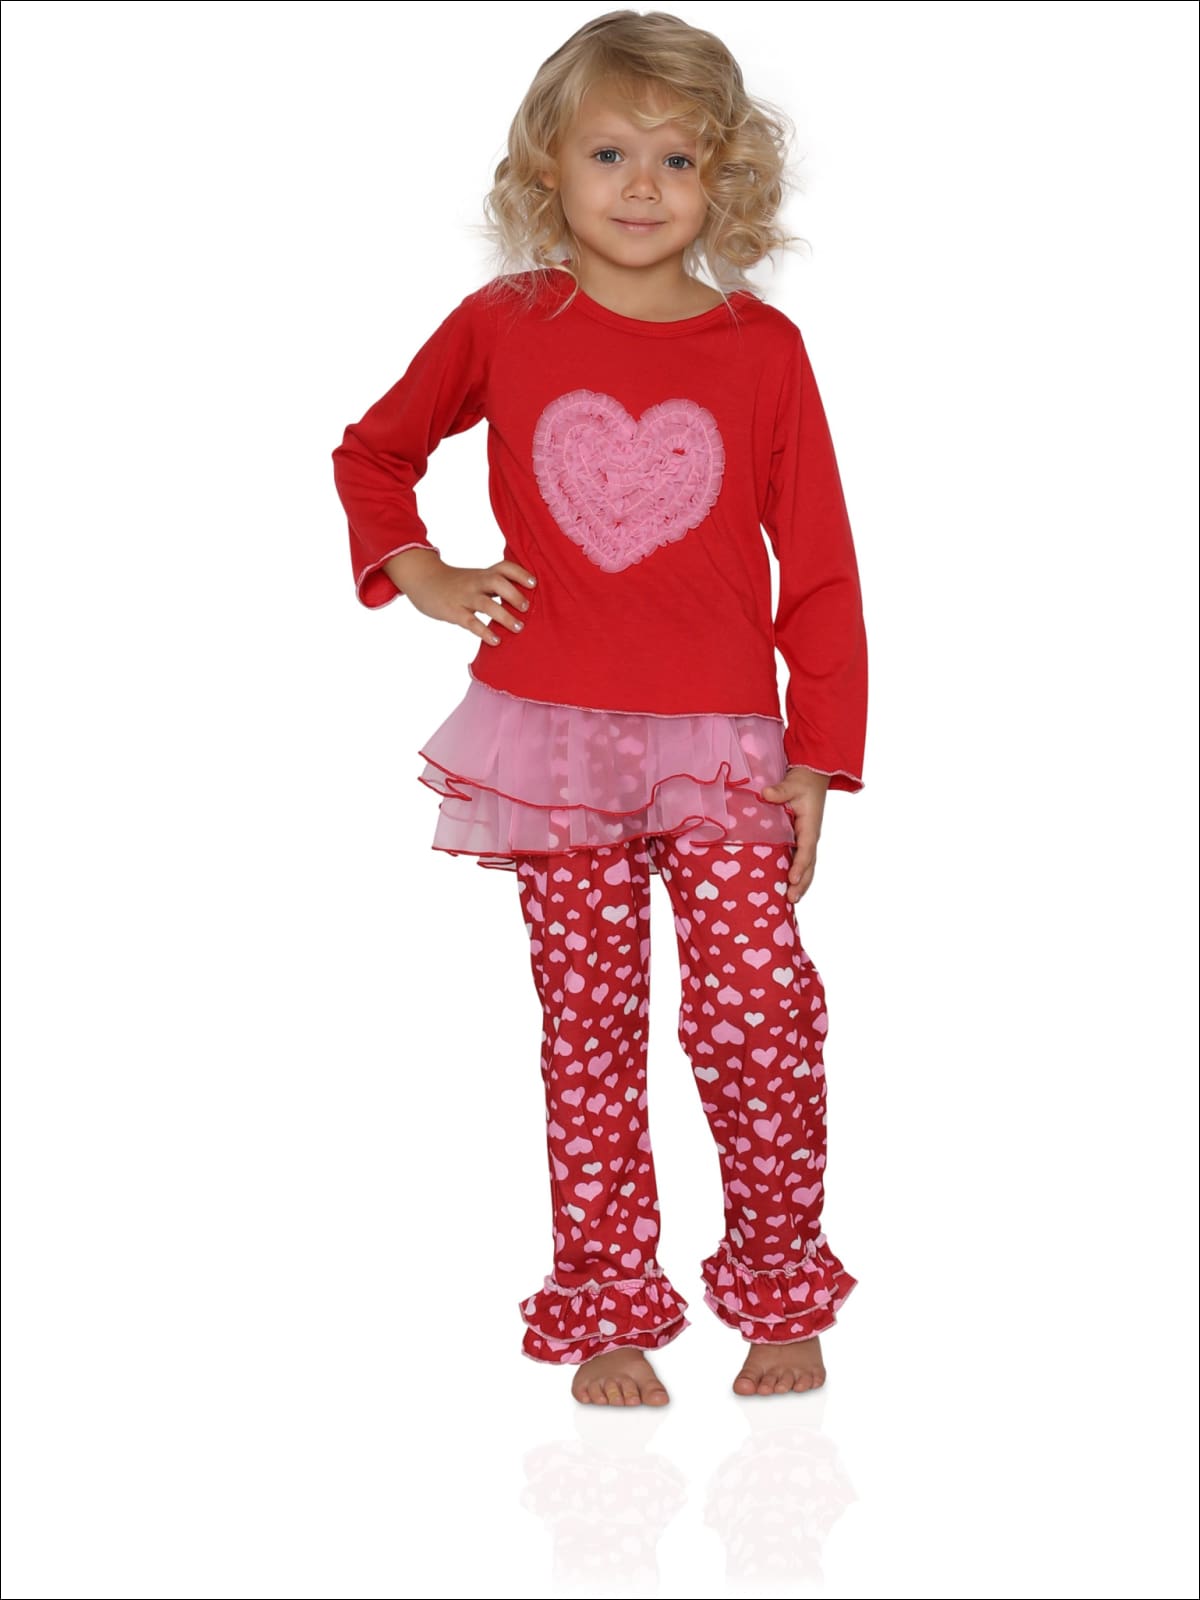 Saras Prints Girls Tulle Heart 2-Piece Pajama